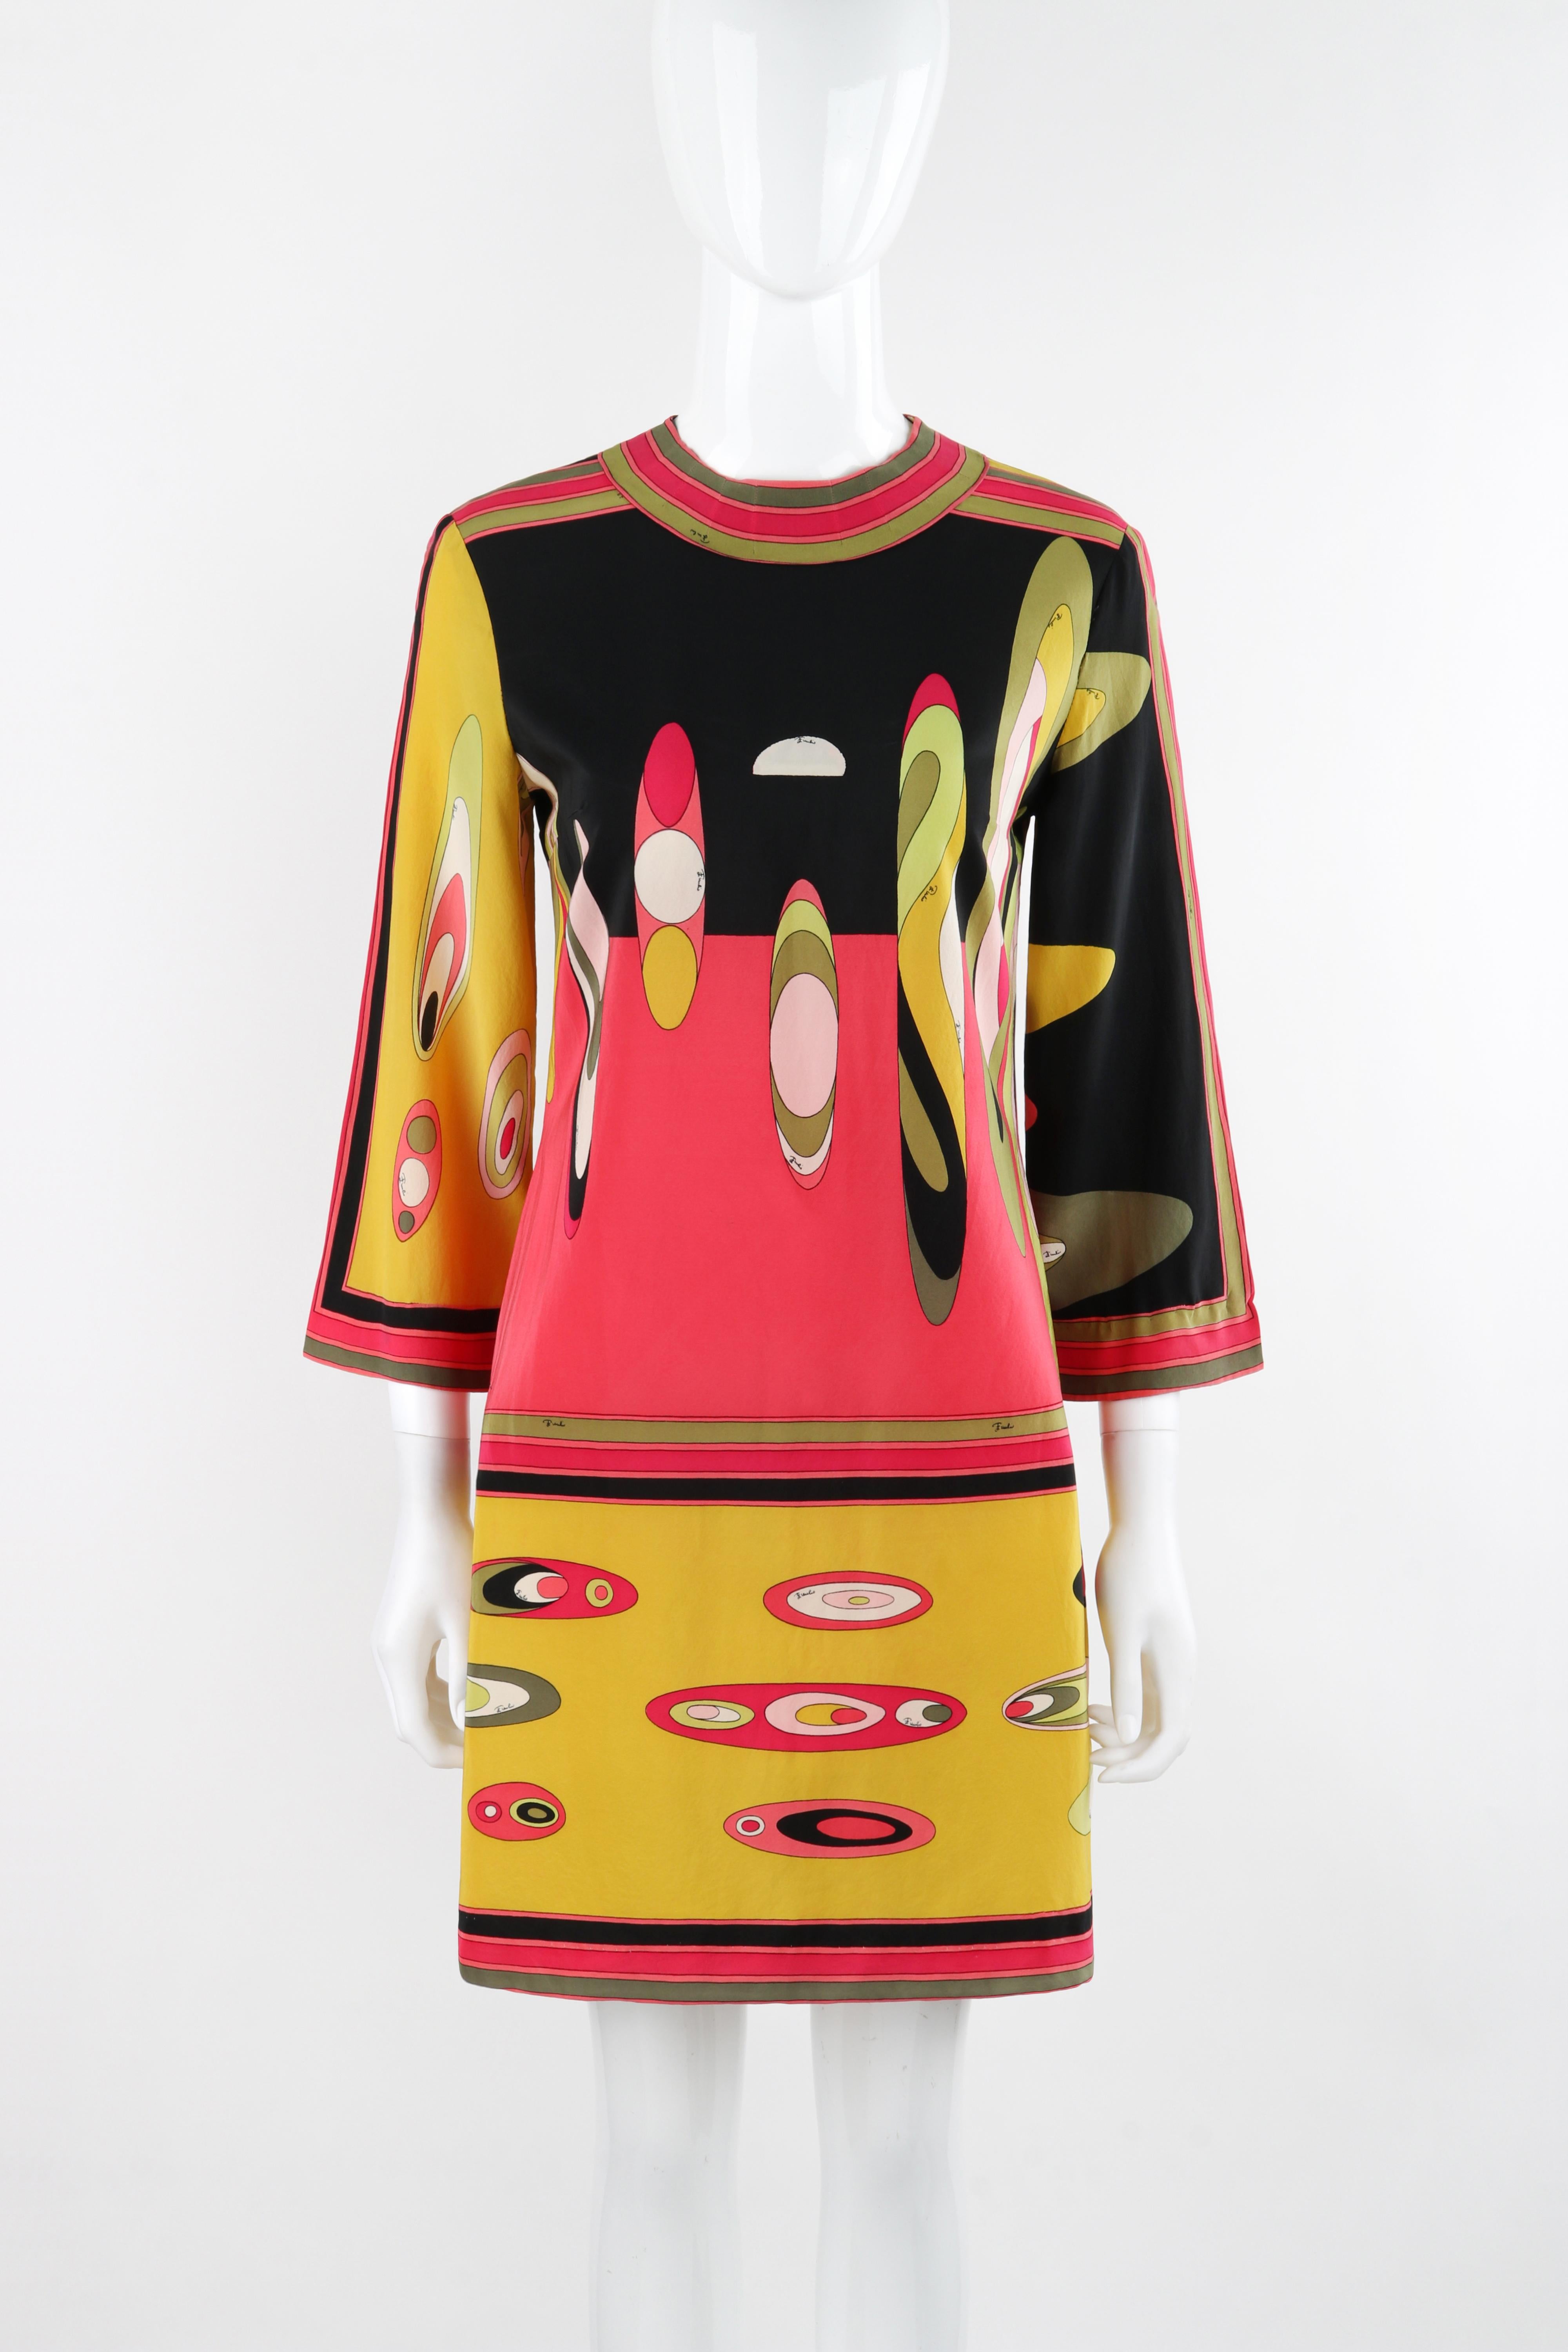 EMILIO PUCCI c.1960s Multicolor Silk Abstract Mod Print Tunic Mini Dress

Brand / Manufacturer: Emilio Pucci
Circa: 1960s
Label(s): Emilio Pucci, Neiman Marcus 